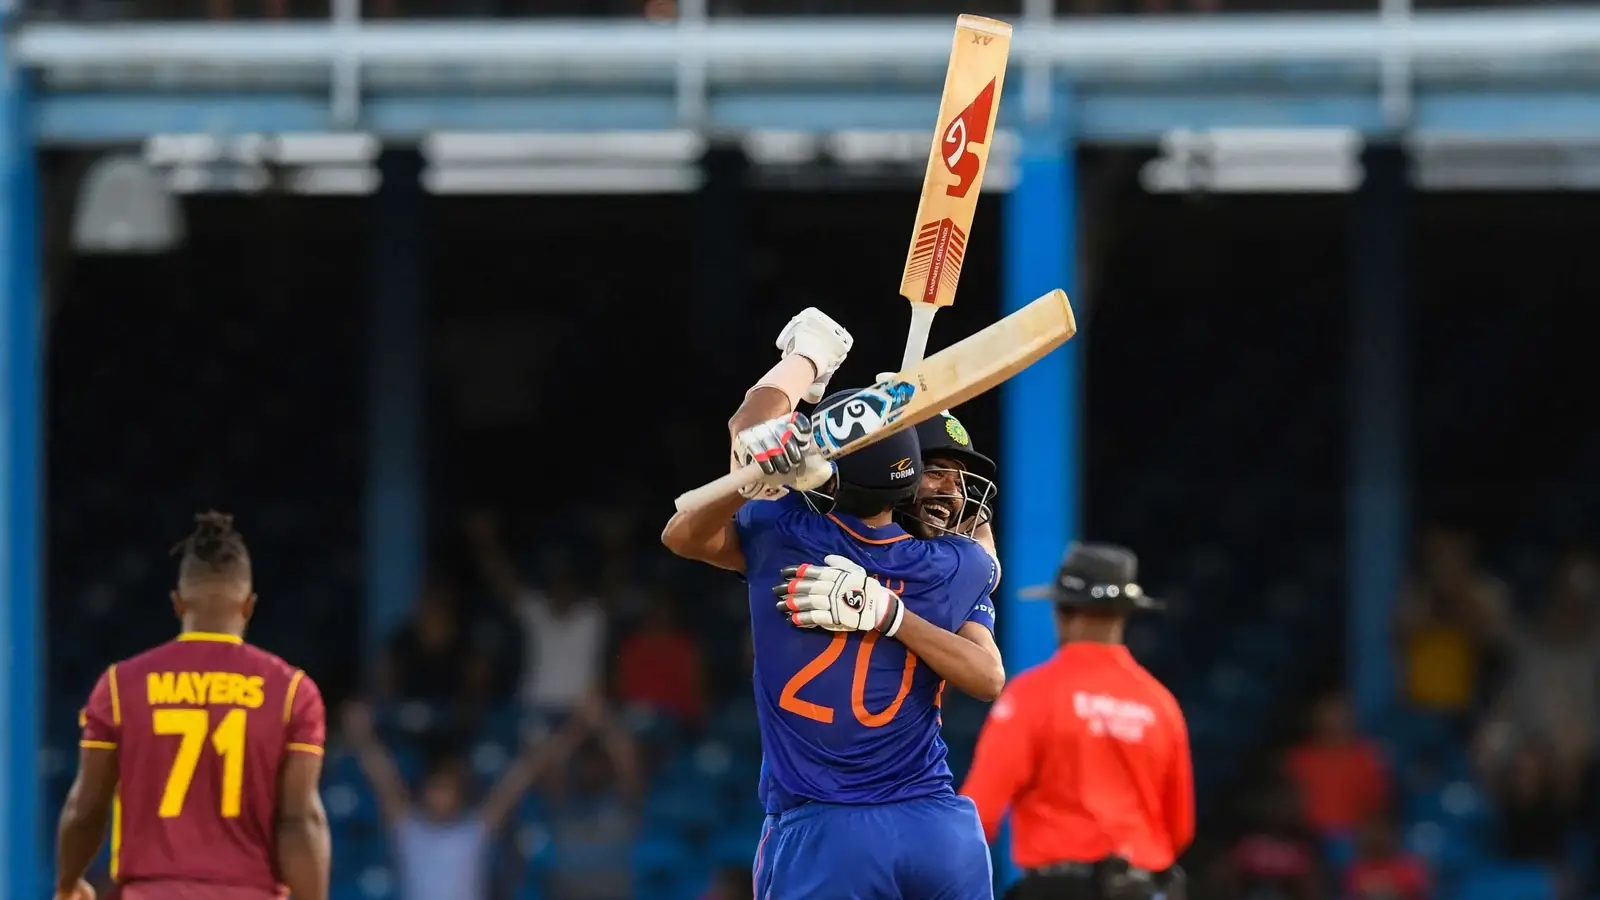  भारत ने वेस्टइंडीज के खिलाफ एकदिवसीय श्रृंखला जीत के साथ पाकिस्तान का शानदार विश्व रिकॉर्ड तोड़ा |  क्रिकेट
